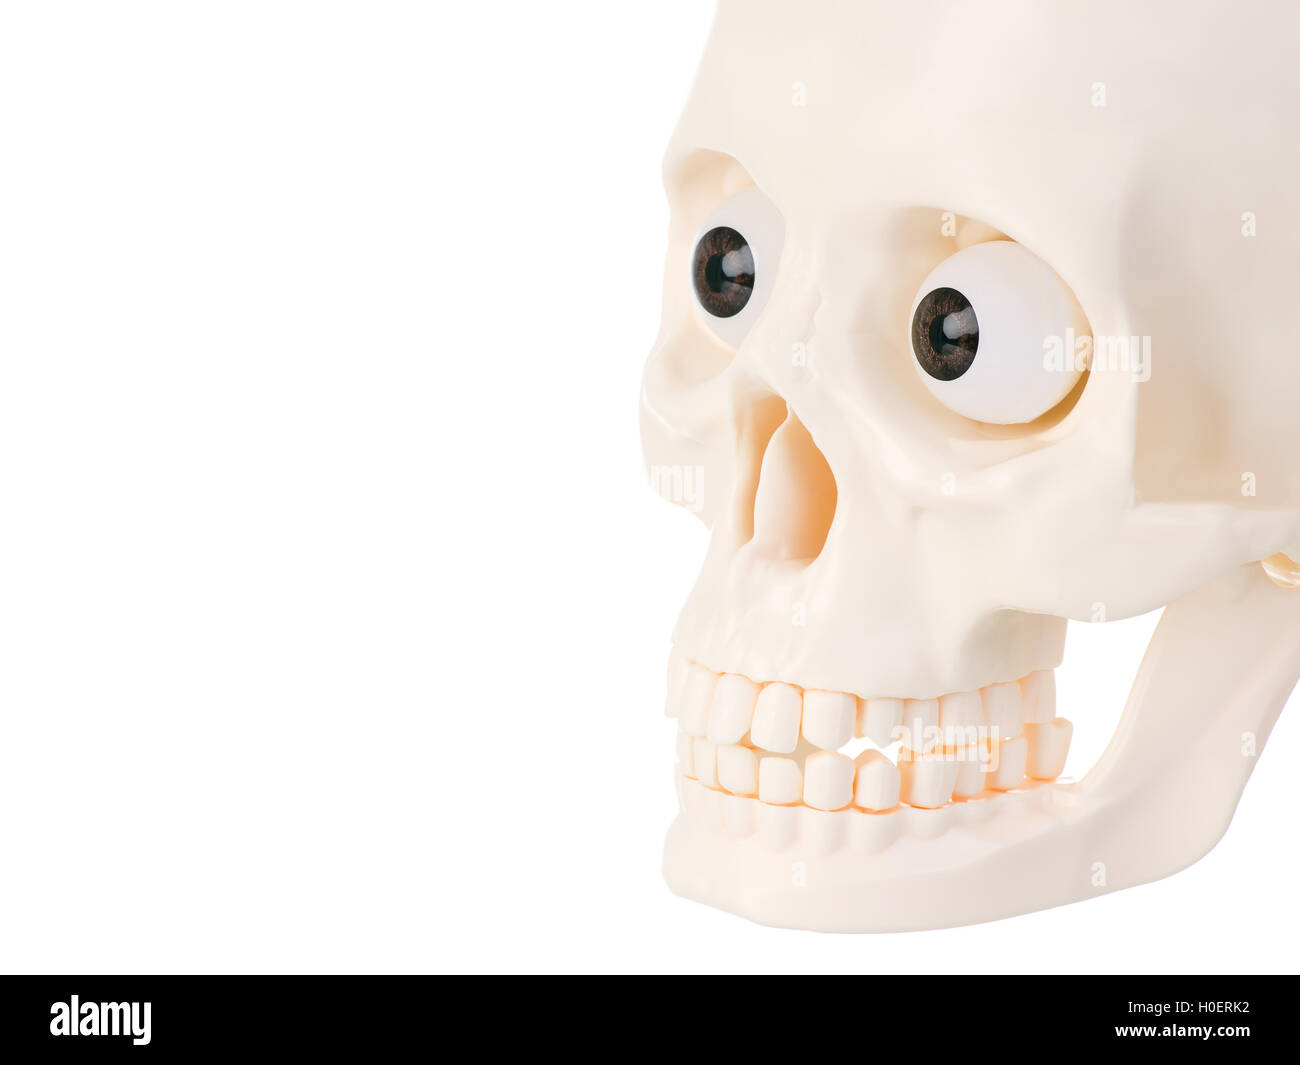 Kunststoff menschlicher Schädel isoliert auf weißem Hintergrund. Stockfoto